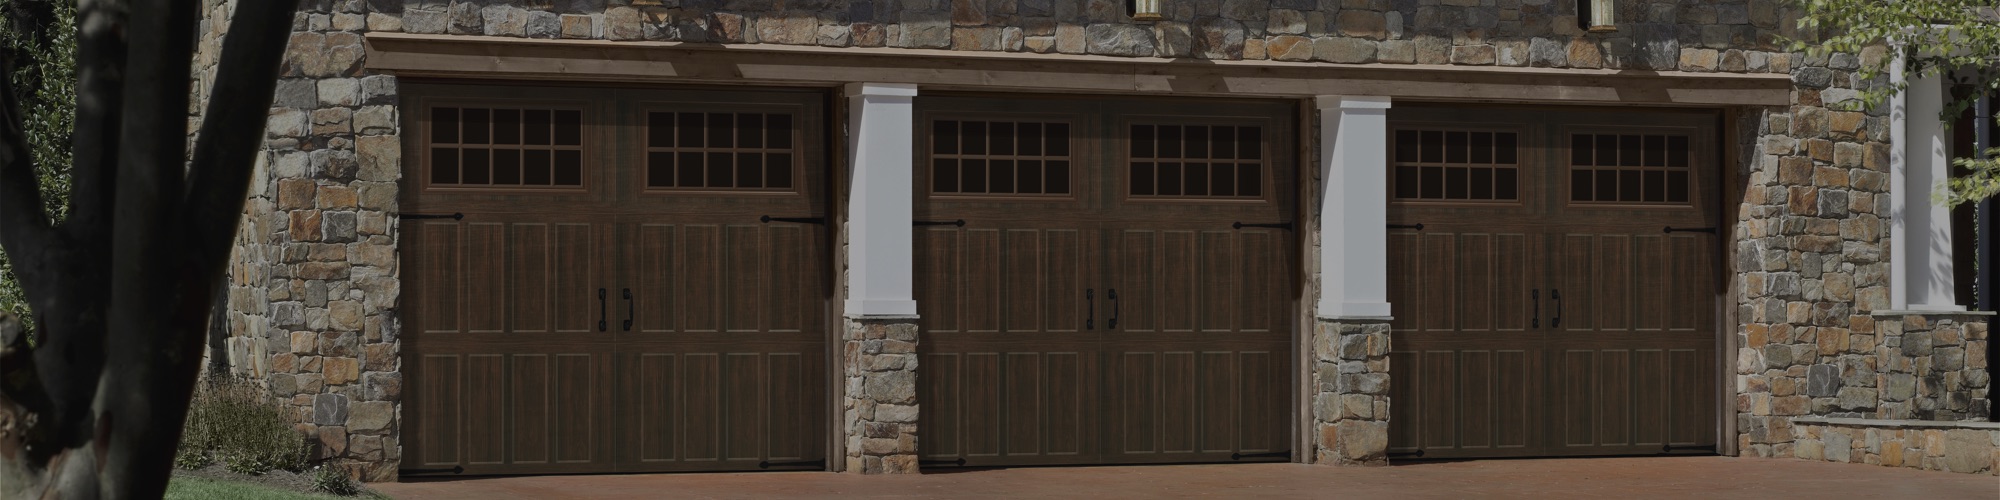 Specialty Garage Doors - Increase Your 